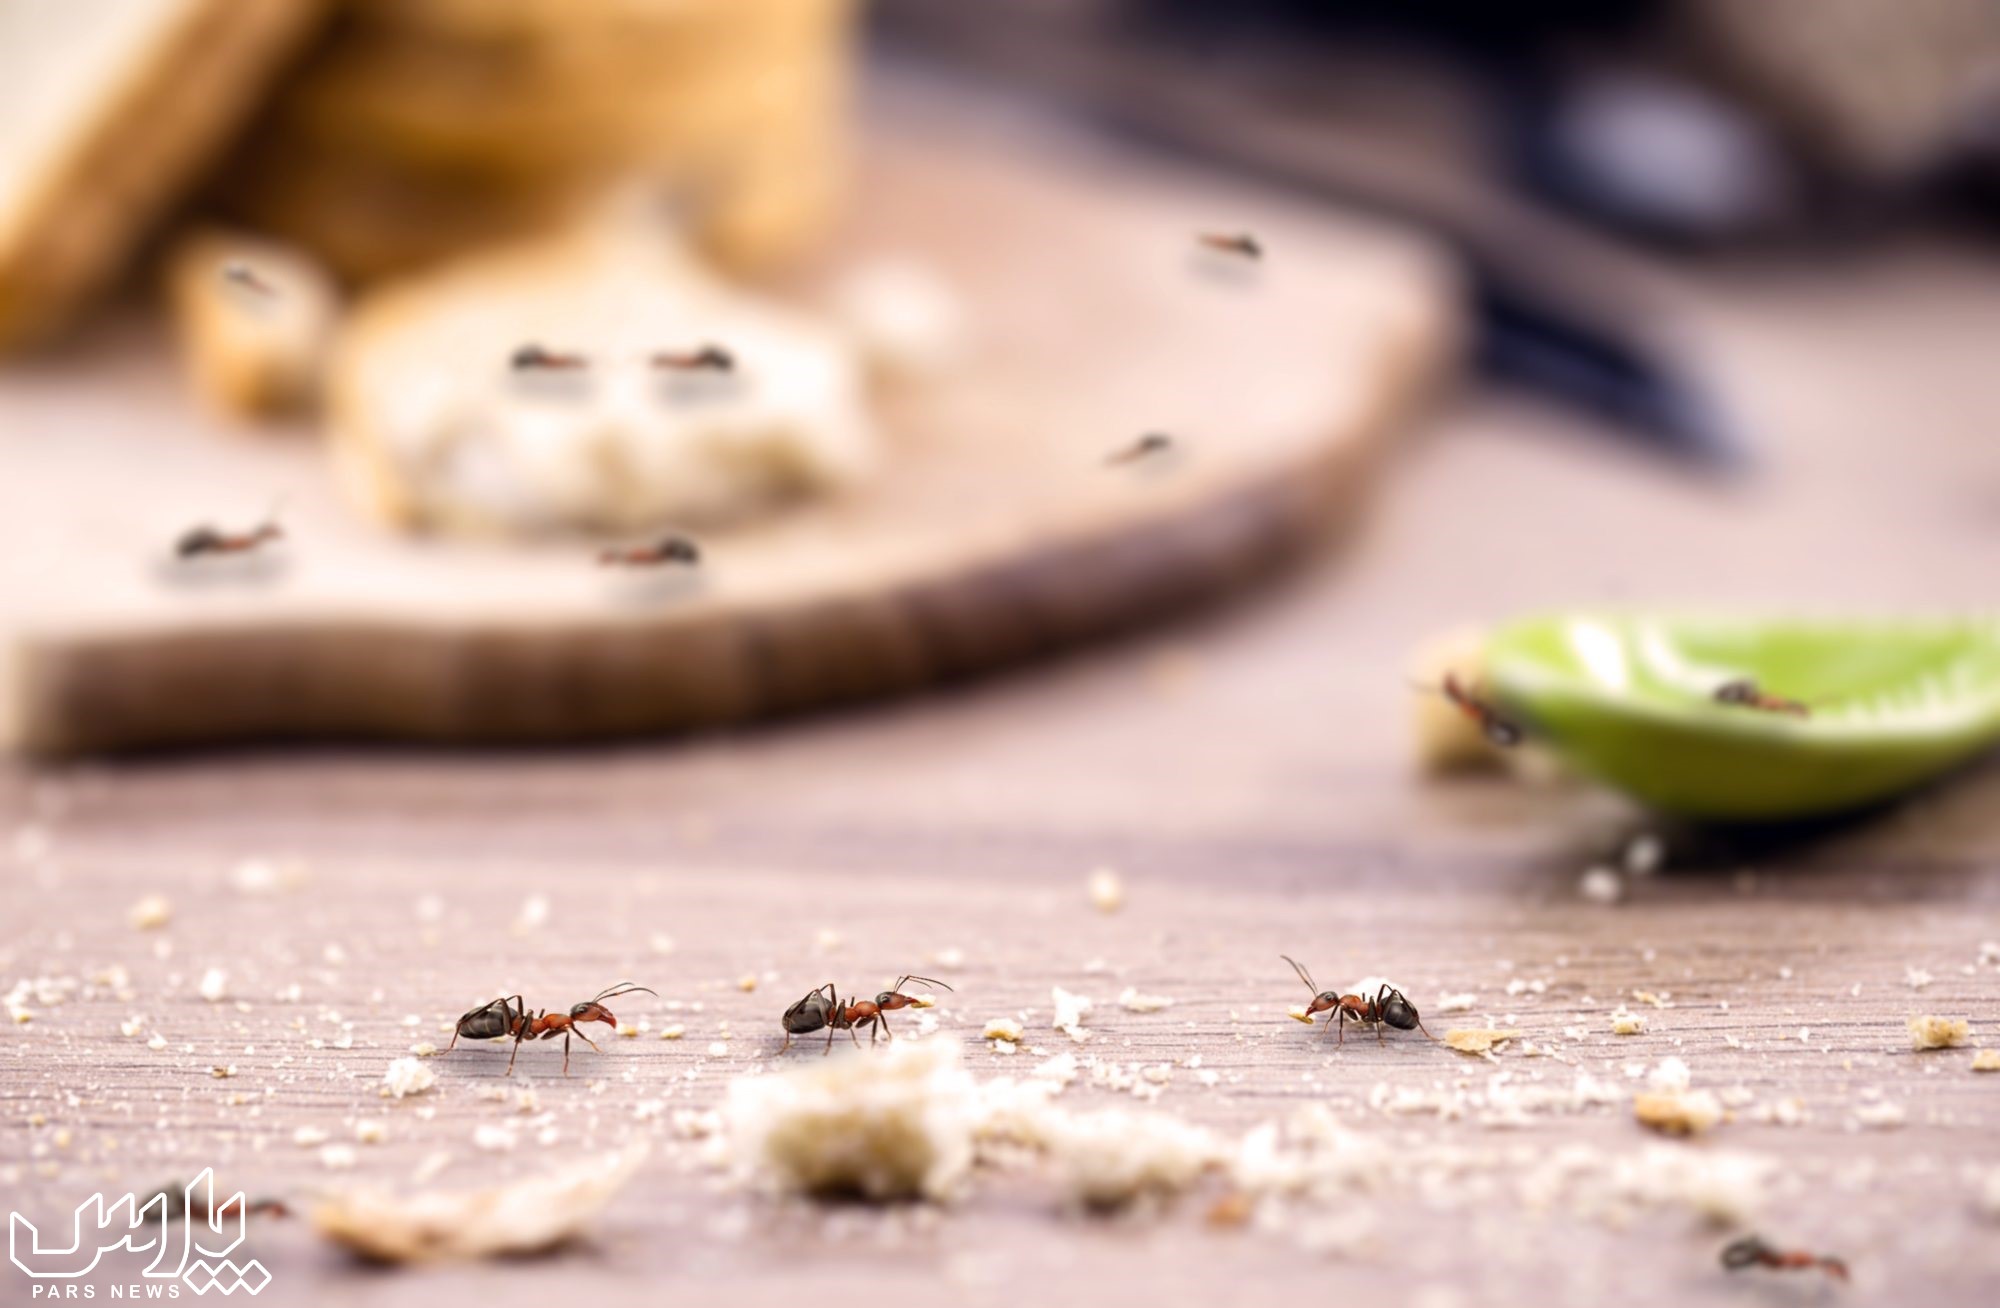 پیدا کردن لانه مورچه - از بین بردن مورچه های خیلی ریز